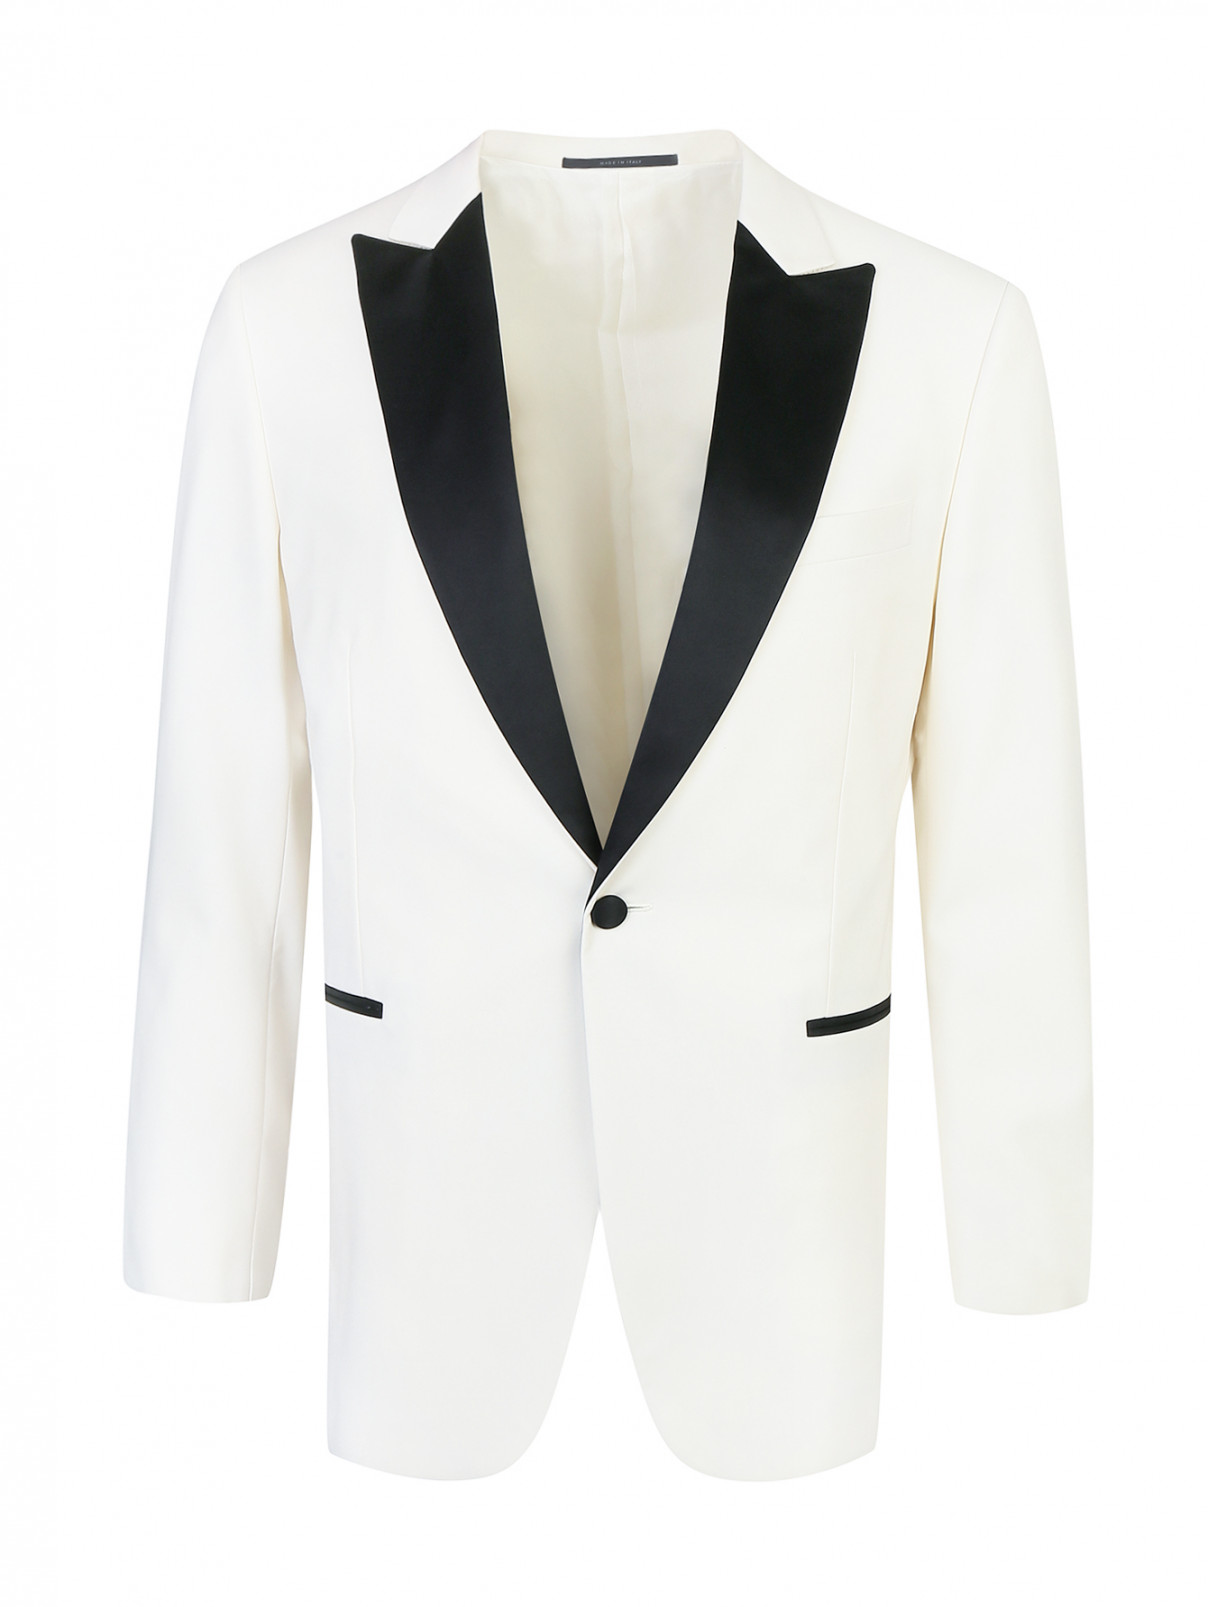 Пиджак с контрастной вставкой Pal Zileri  –  Общий вид  – Цвет:  Белый